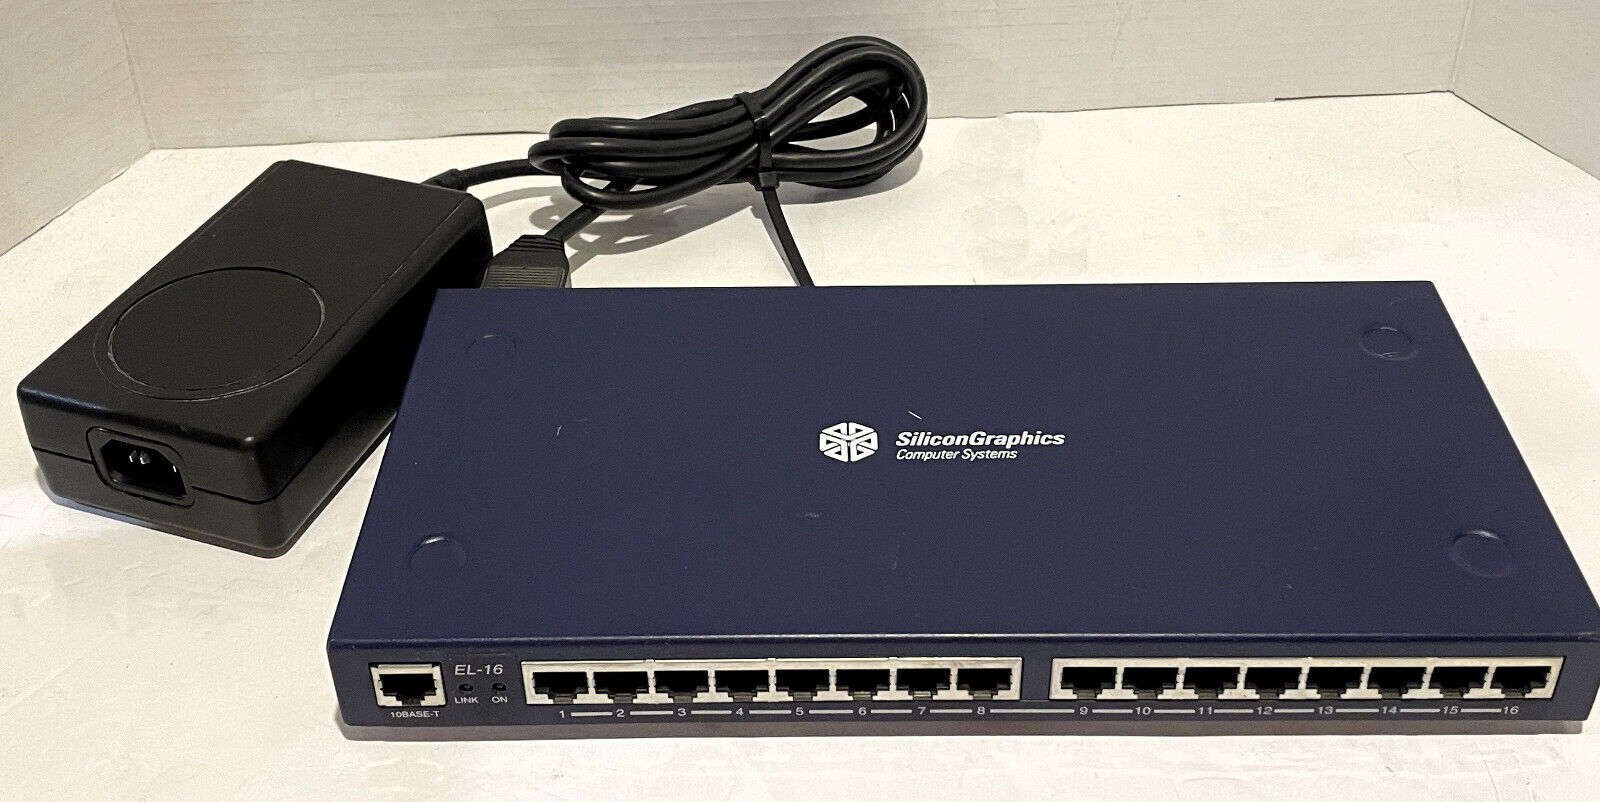 SGI Silicon Graphics 16 Port Terminal Server EL-16-1.0 & Power Supply